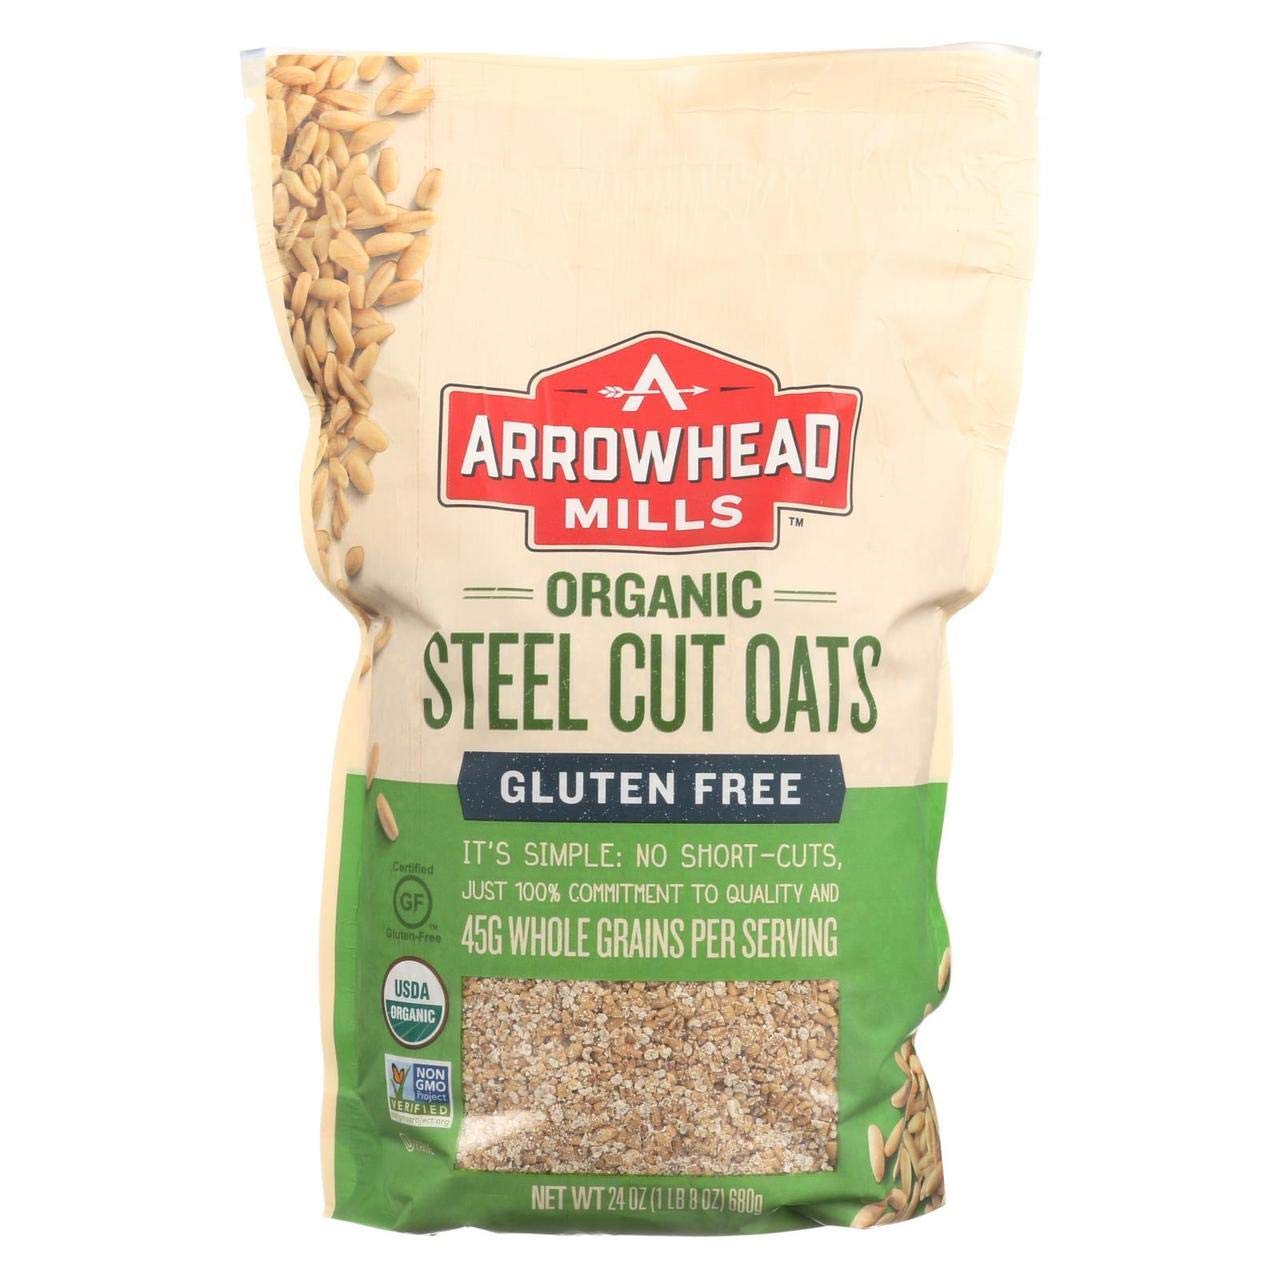 Arrowhead Mills Organic Gluten Free Steel Cut Oats, 24 Ounce Box (Pack Of 6)